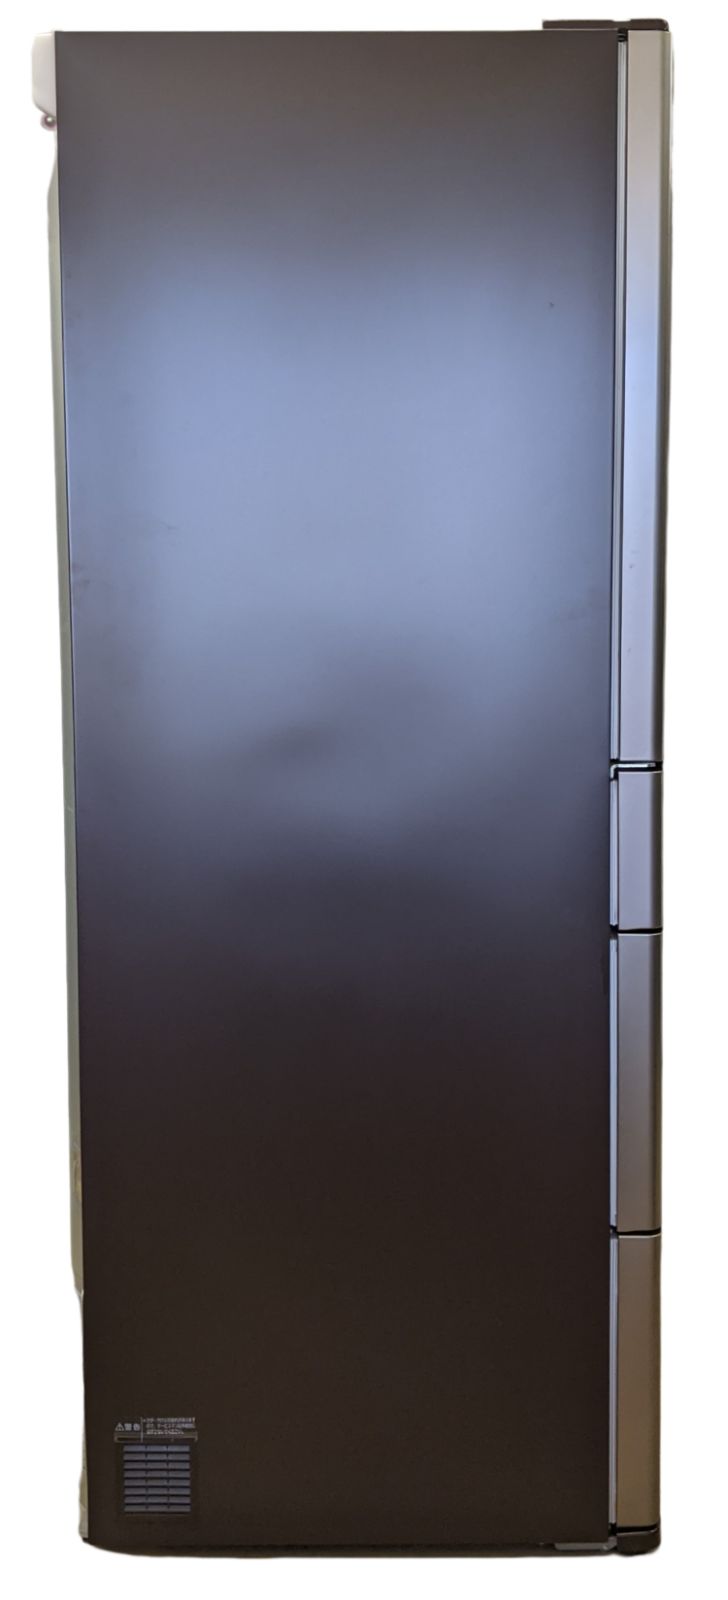 日立ノンフロン冷凍冷蔵庫(6ドア/R-A5700-1 XT型/2011年製) - メルカリ